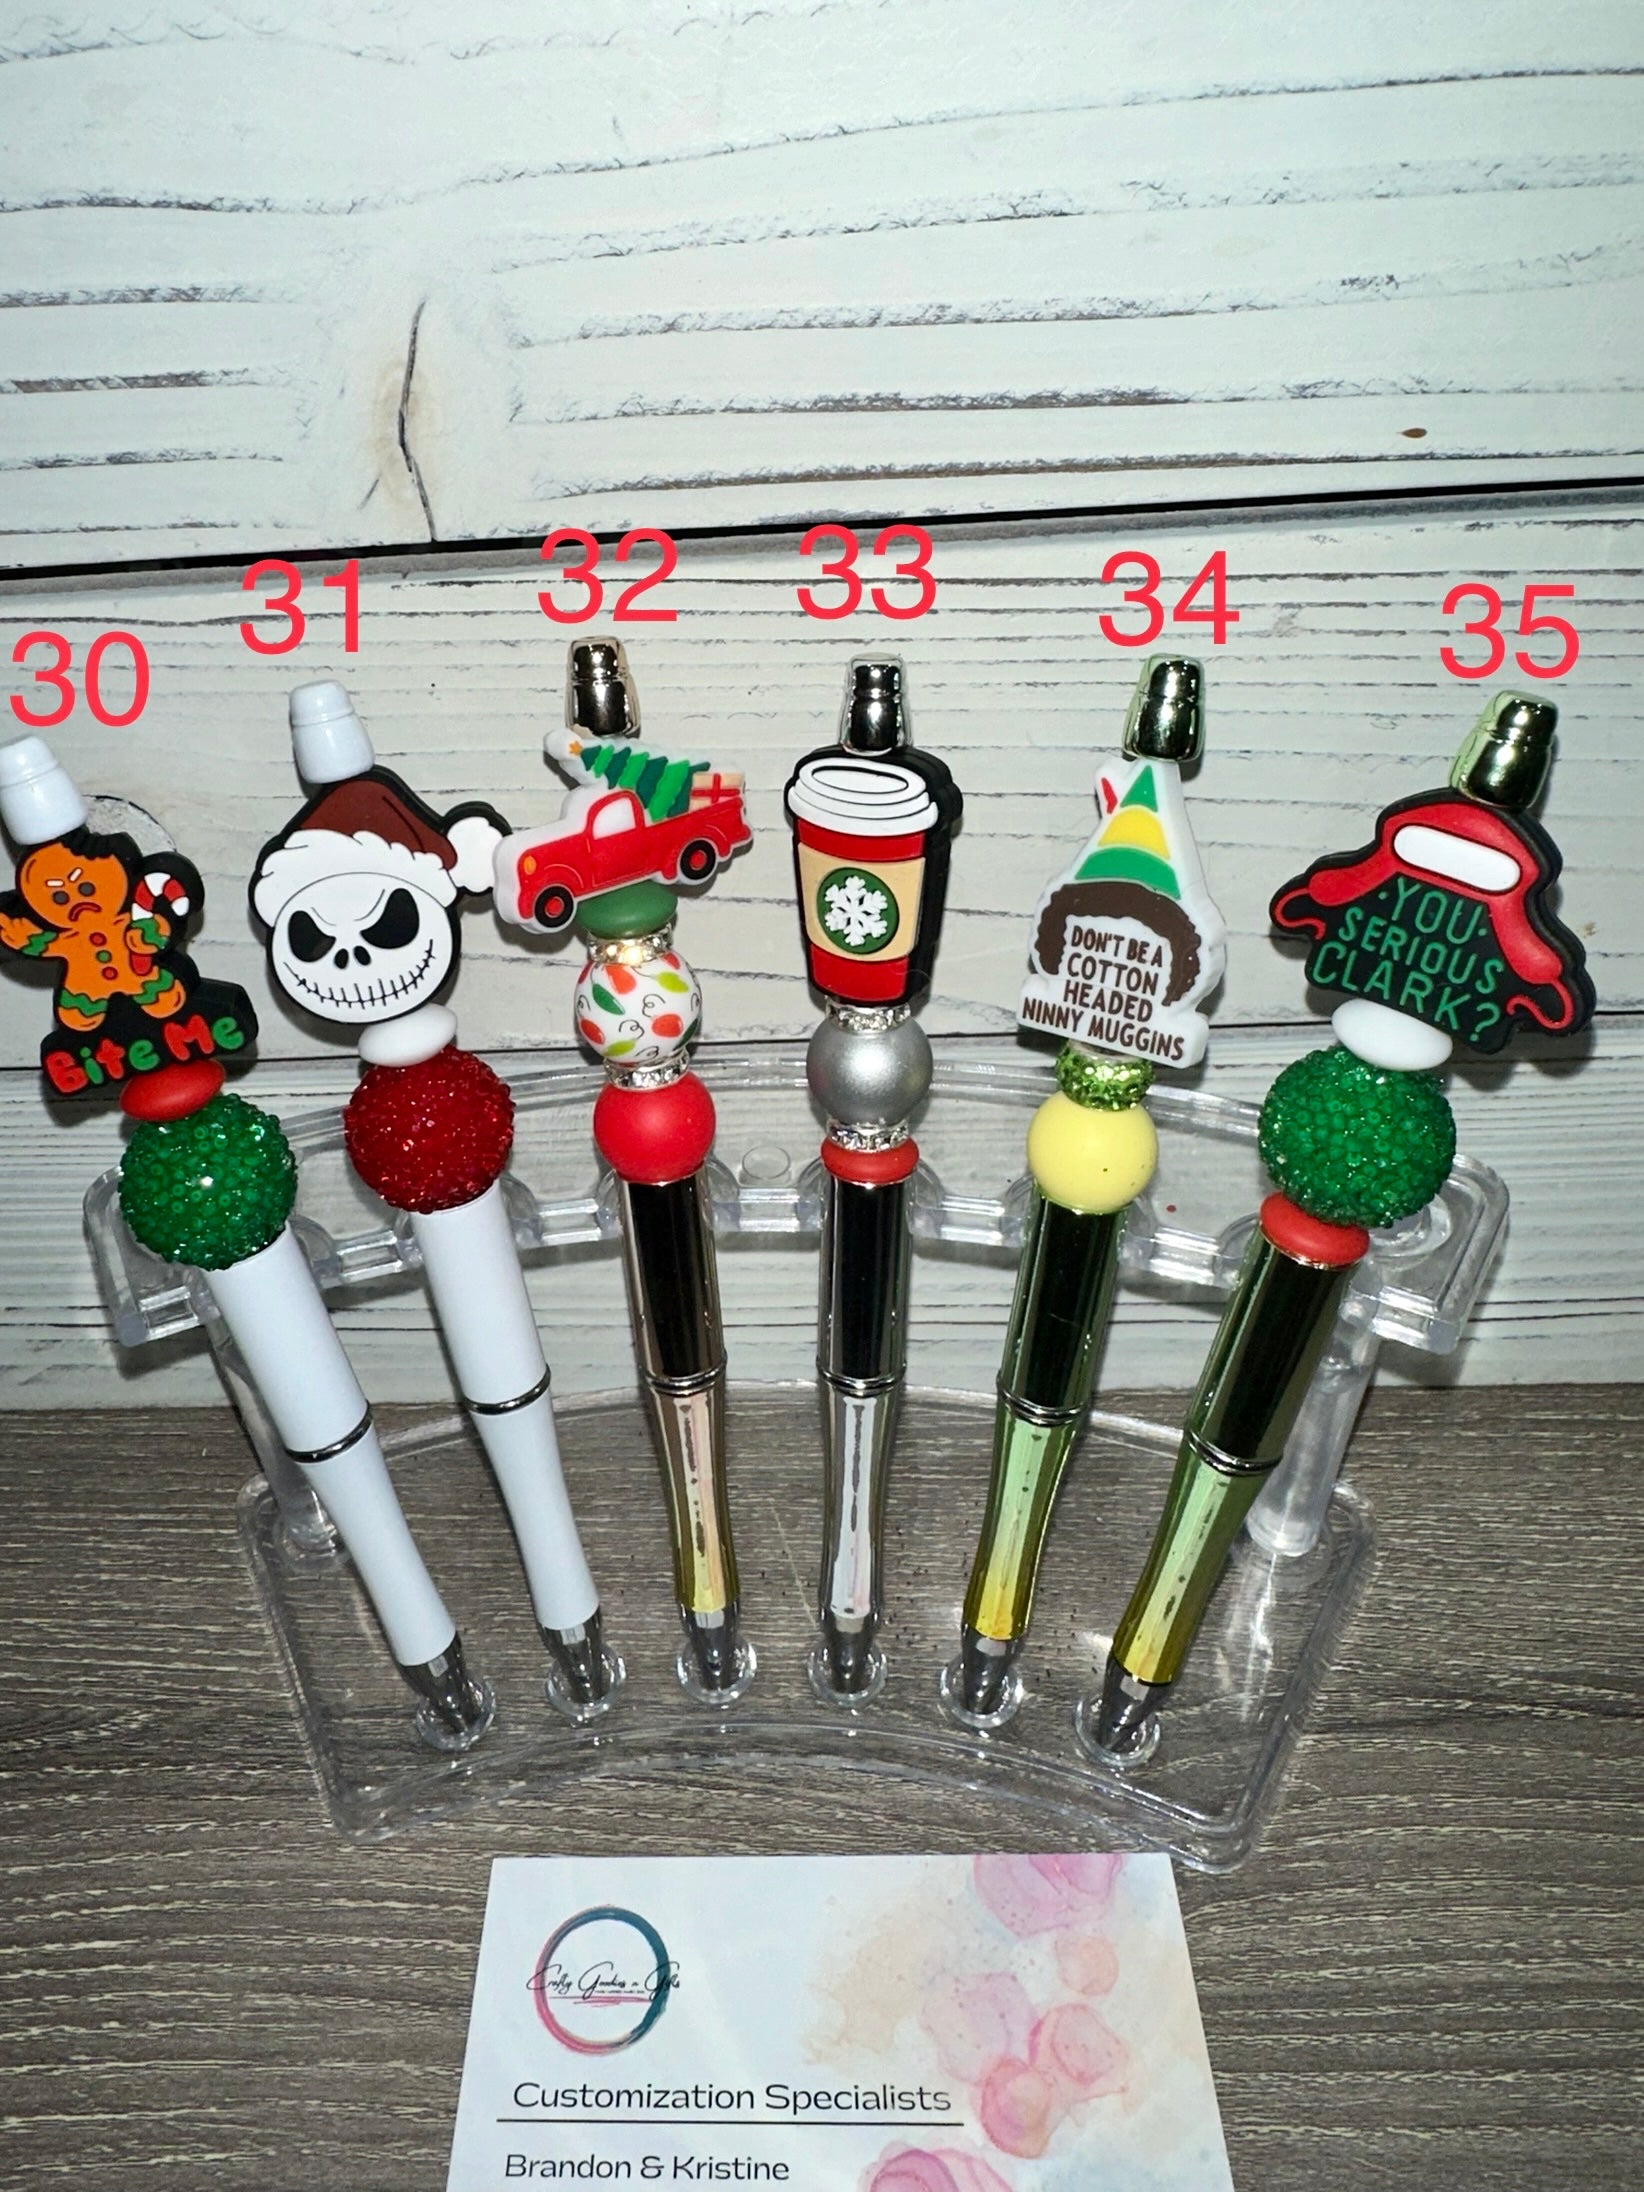 Christmas Pens